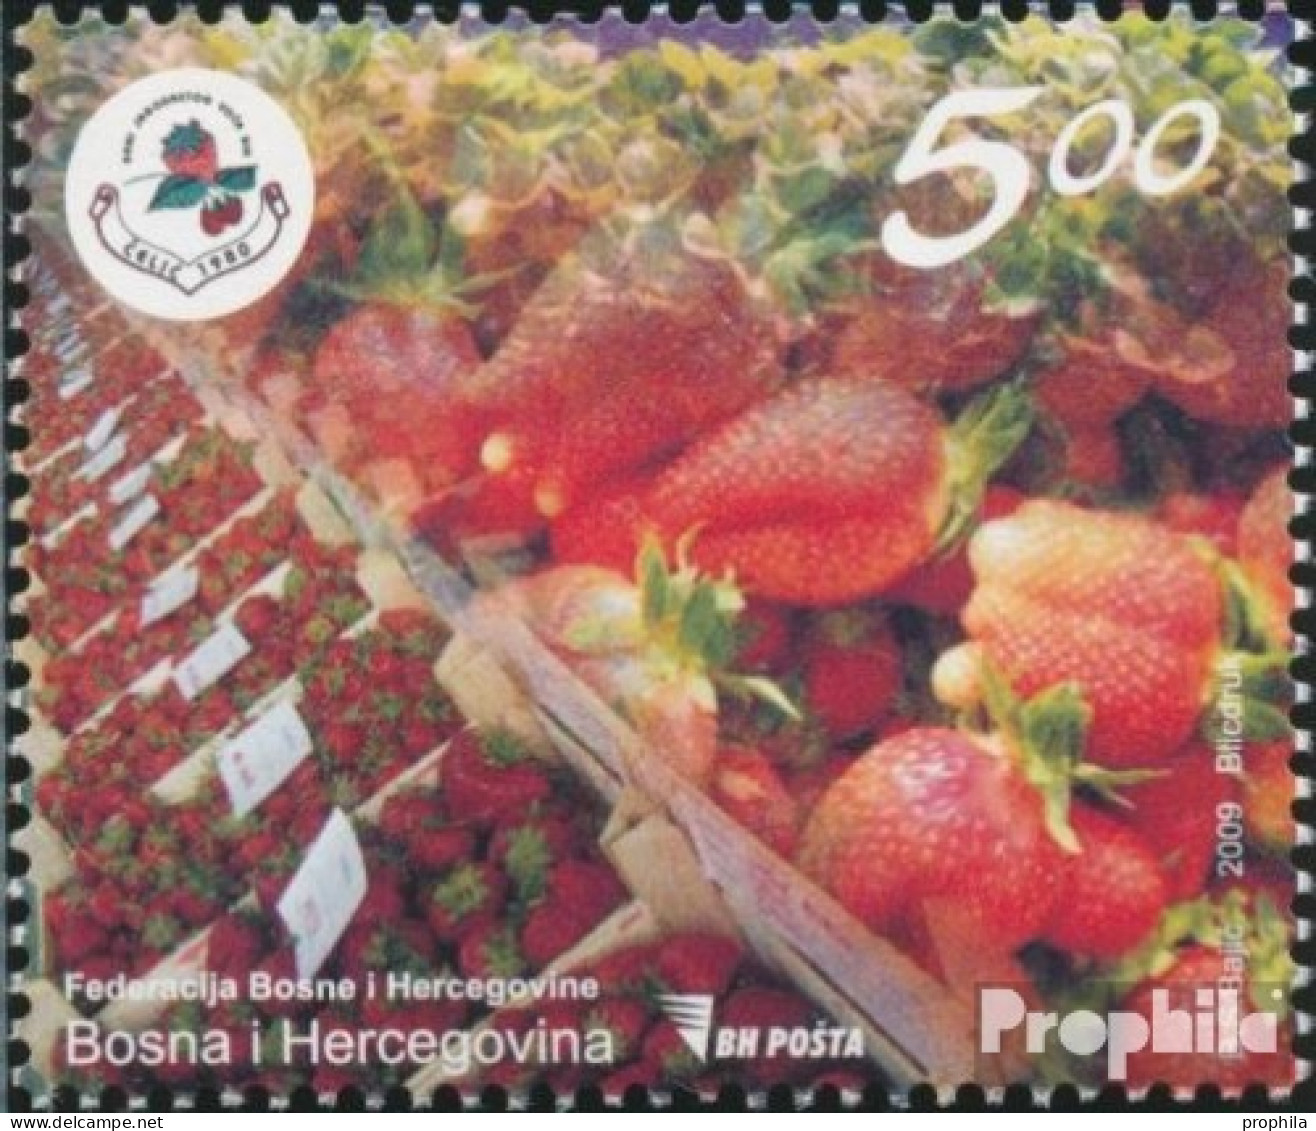 Bosnien-Herzegowina 555 (kompl.Ausg.) Postfrisch 2009 Wirtschaftsmesse - Bosnie-Herzegovine